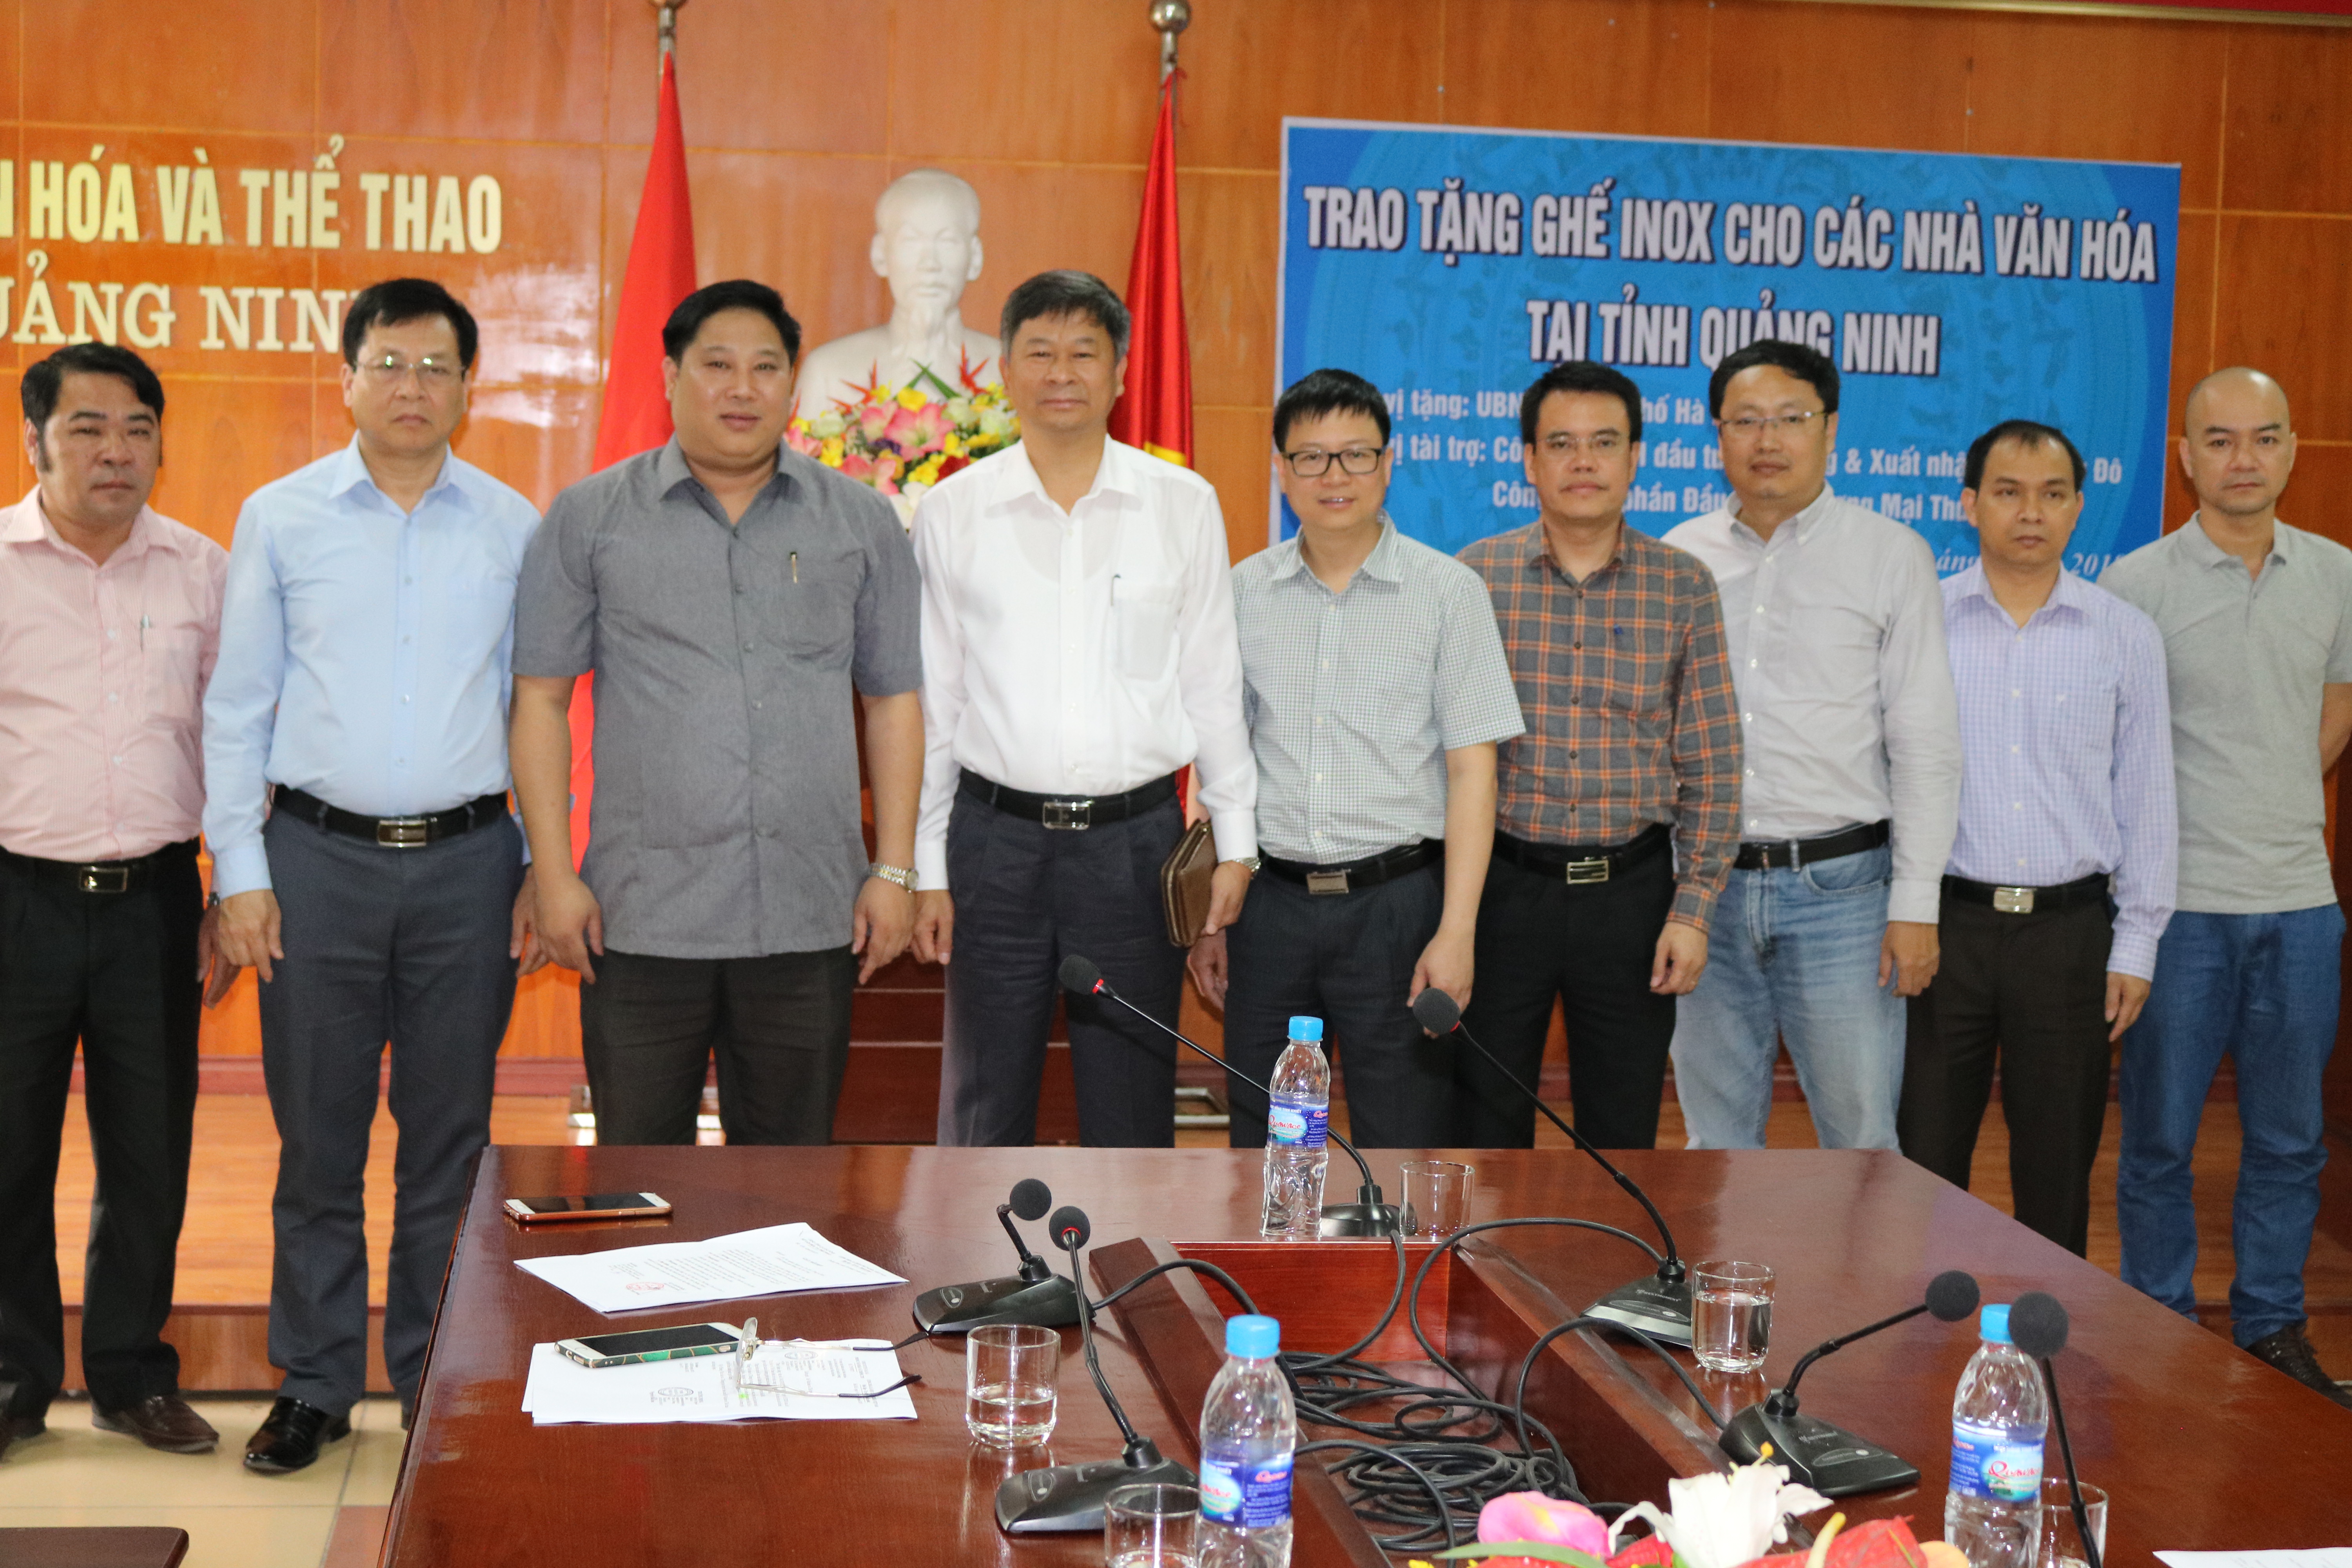 Trao tặng ghế inox cho các địa phương vùng biên giới tỉnh Quảng Ninh năm 2018